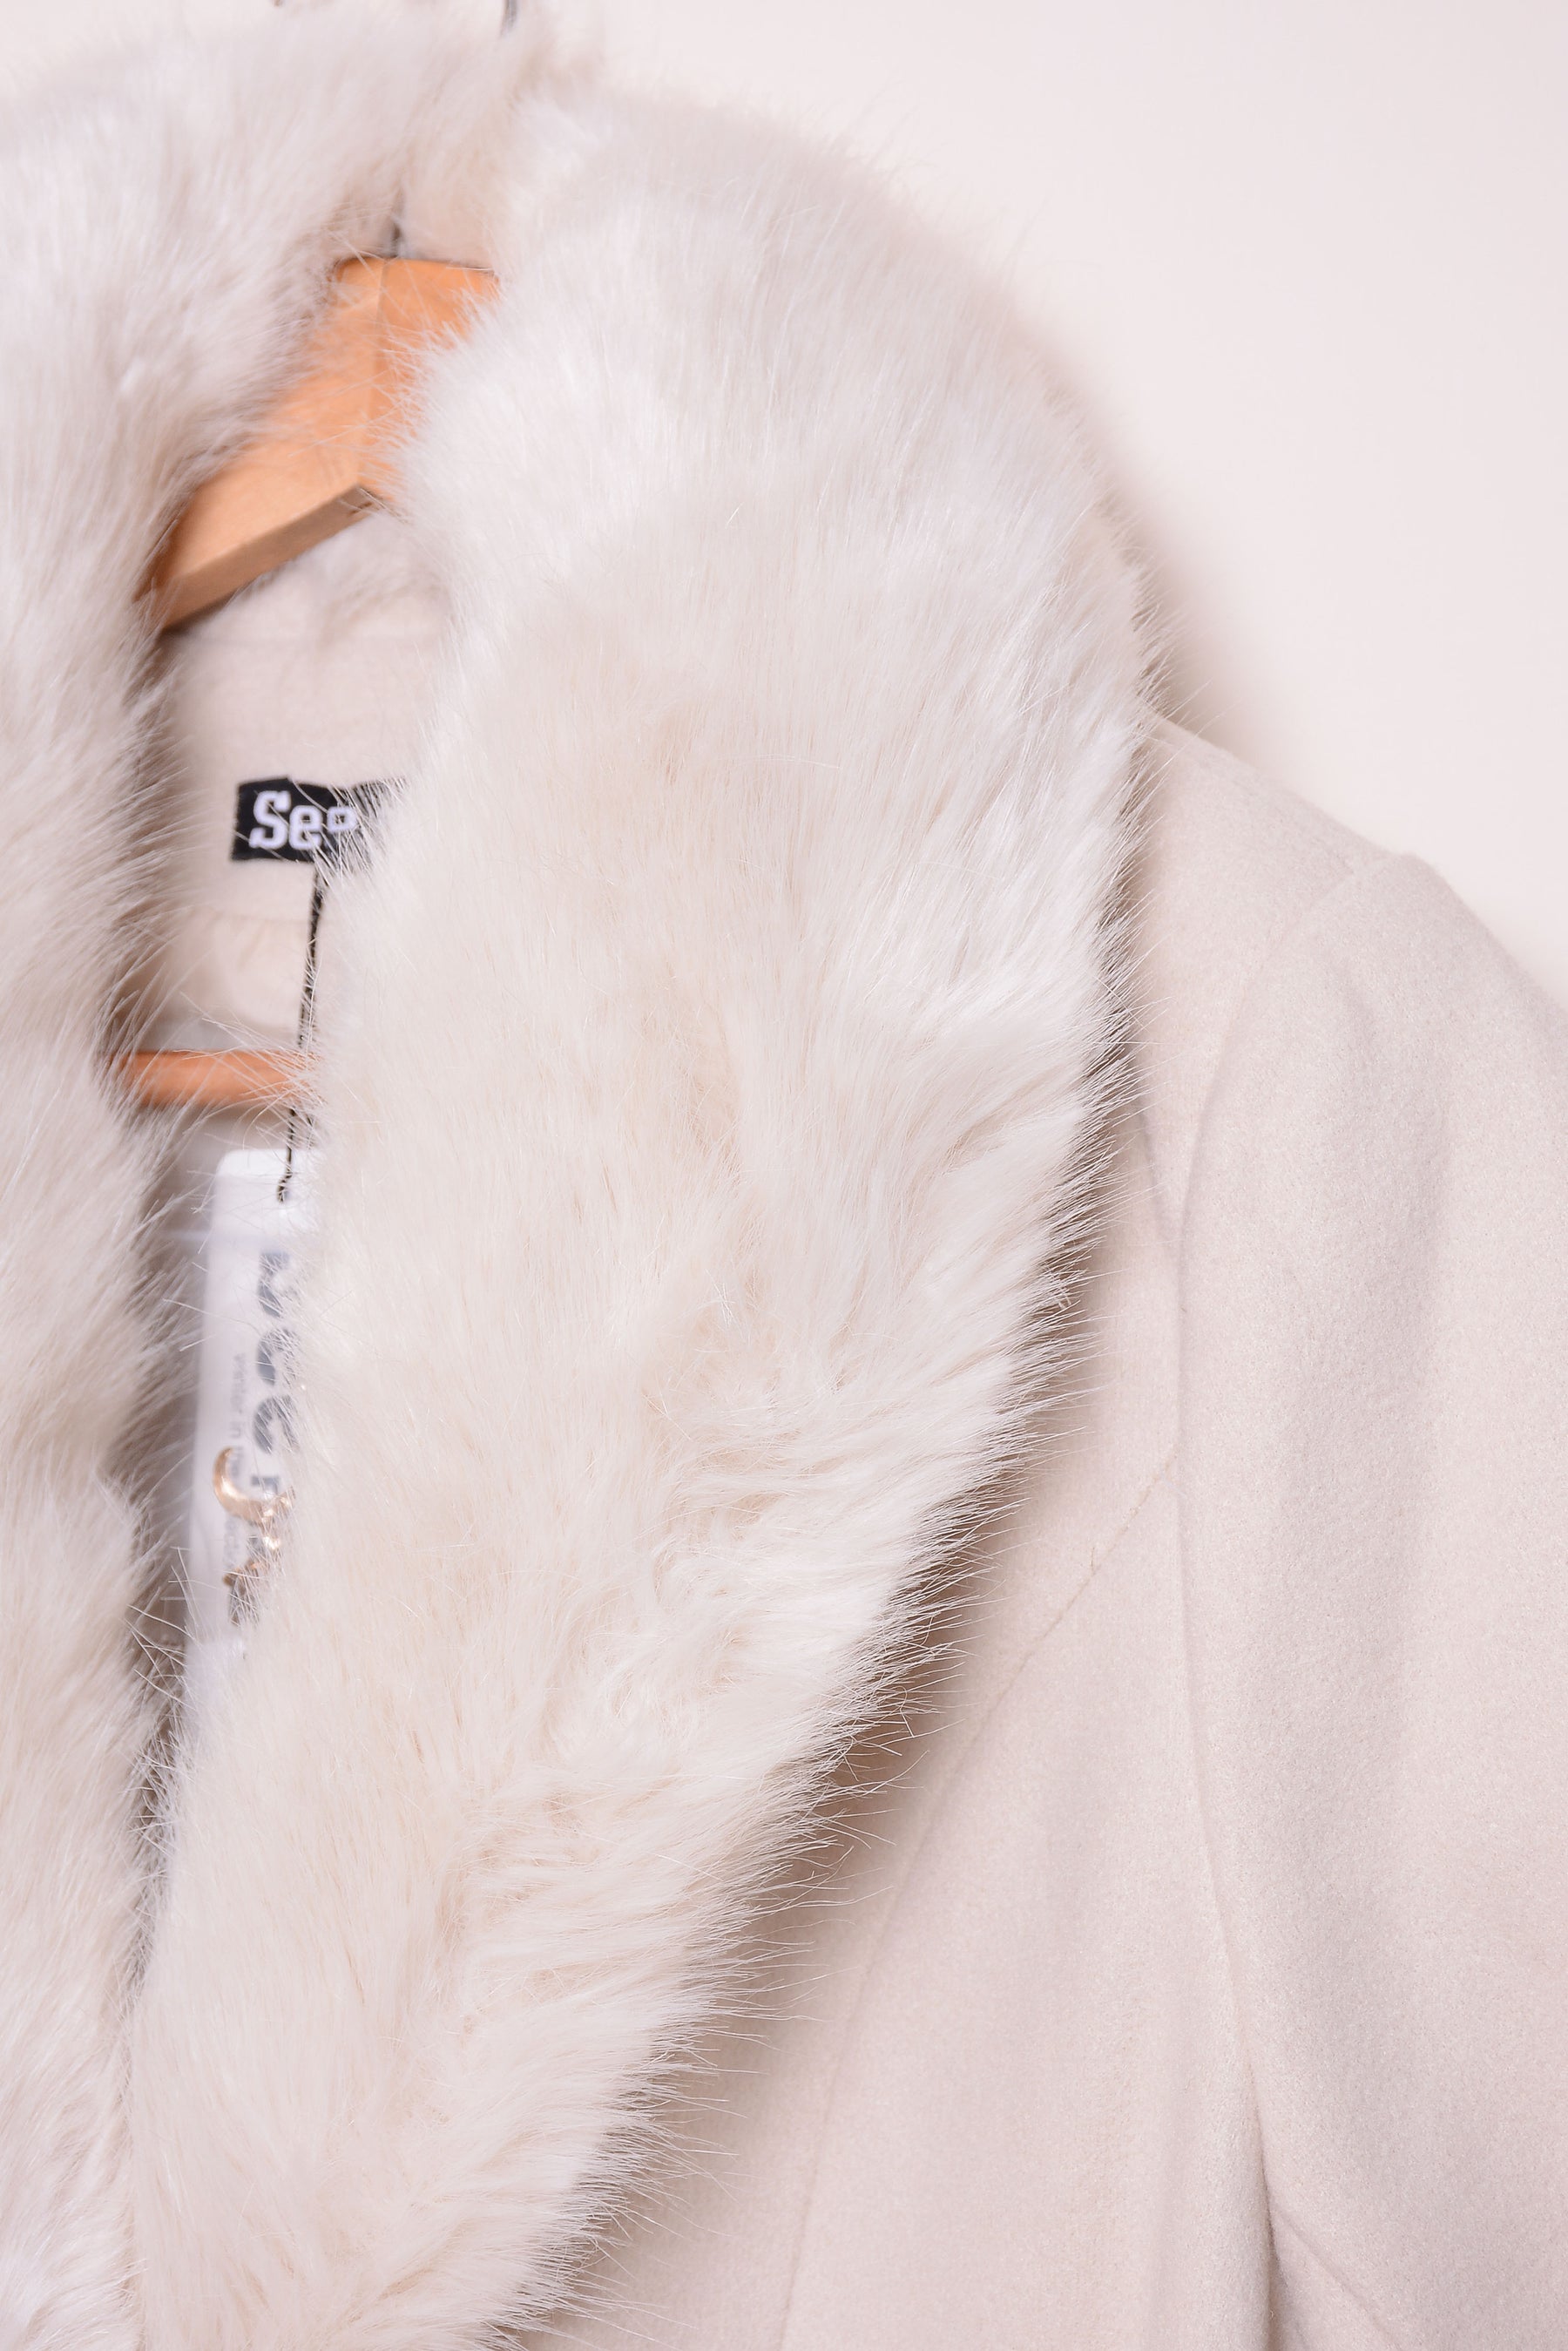 Ladies Winter Long Coats ykn-583 cream XL